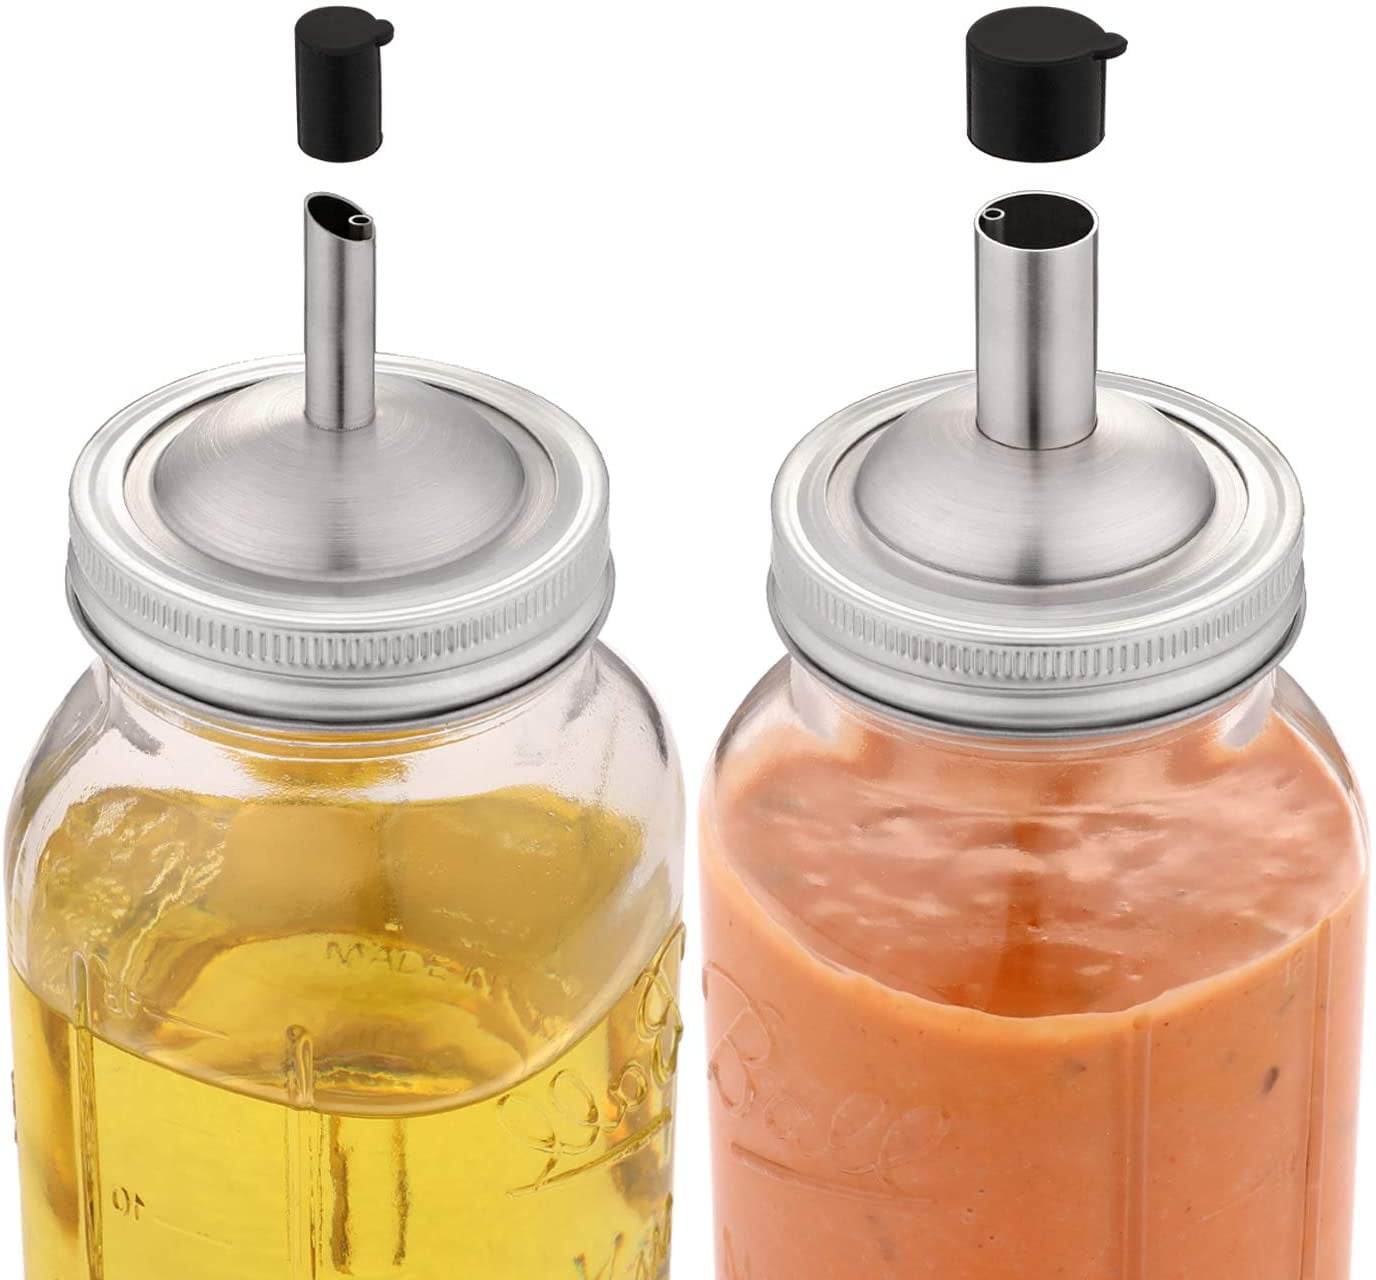 2 Pieces Jar Oil Spout Lid Oil Pour Spout Dispenser Lid Regular Mouth Oil Pour Lid with Caps Compatible with Mason Jar 